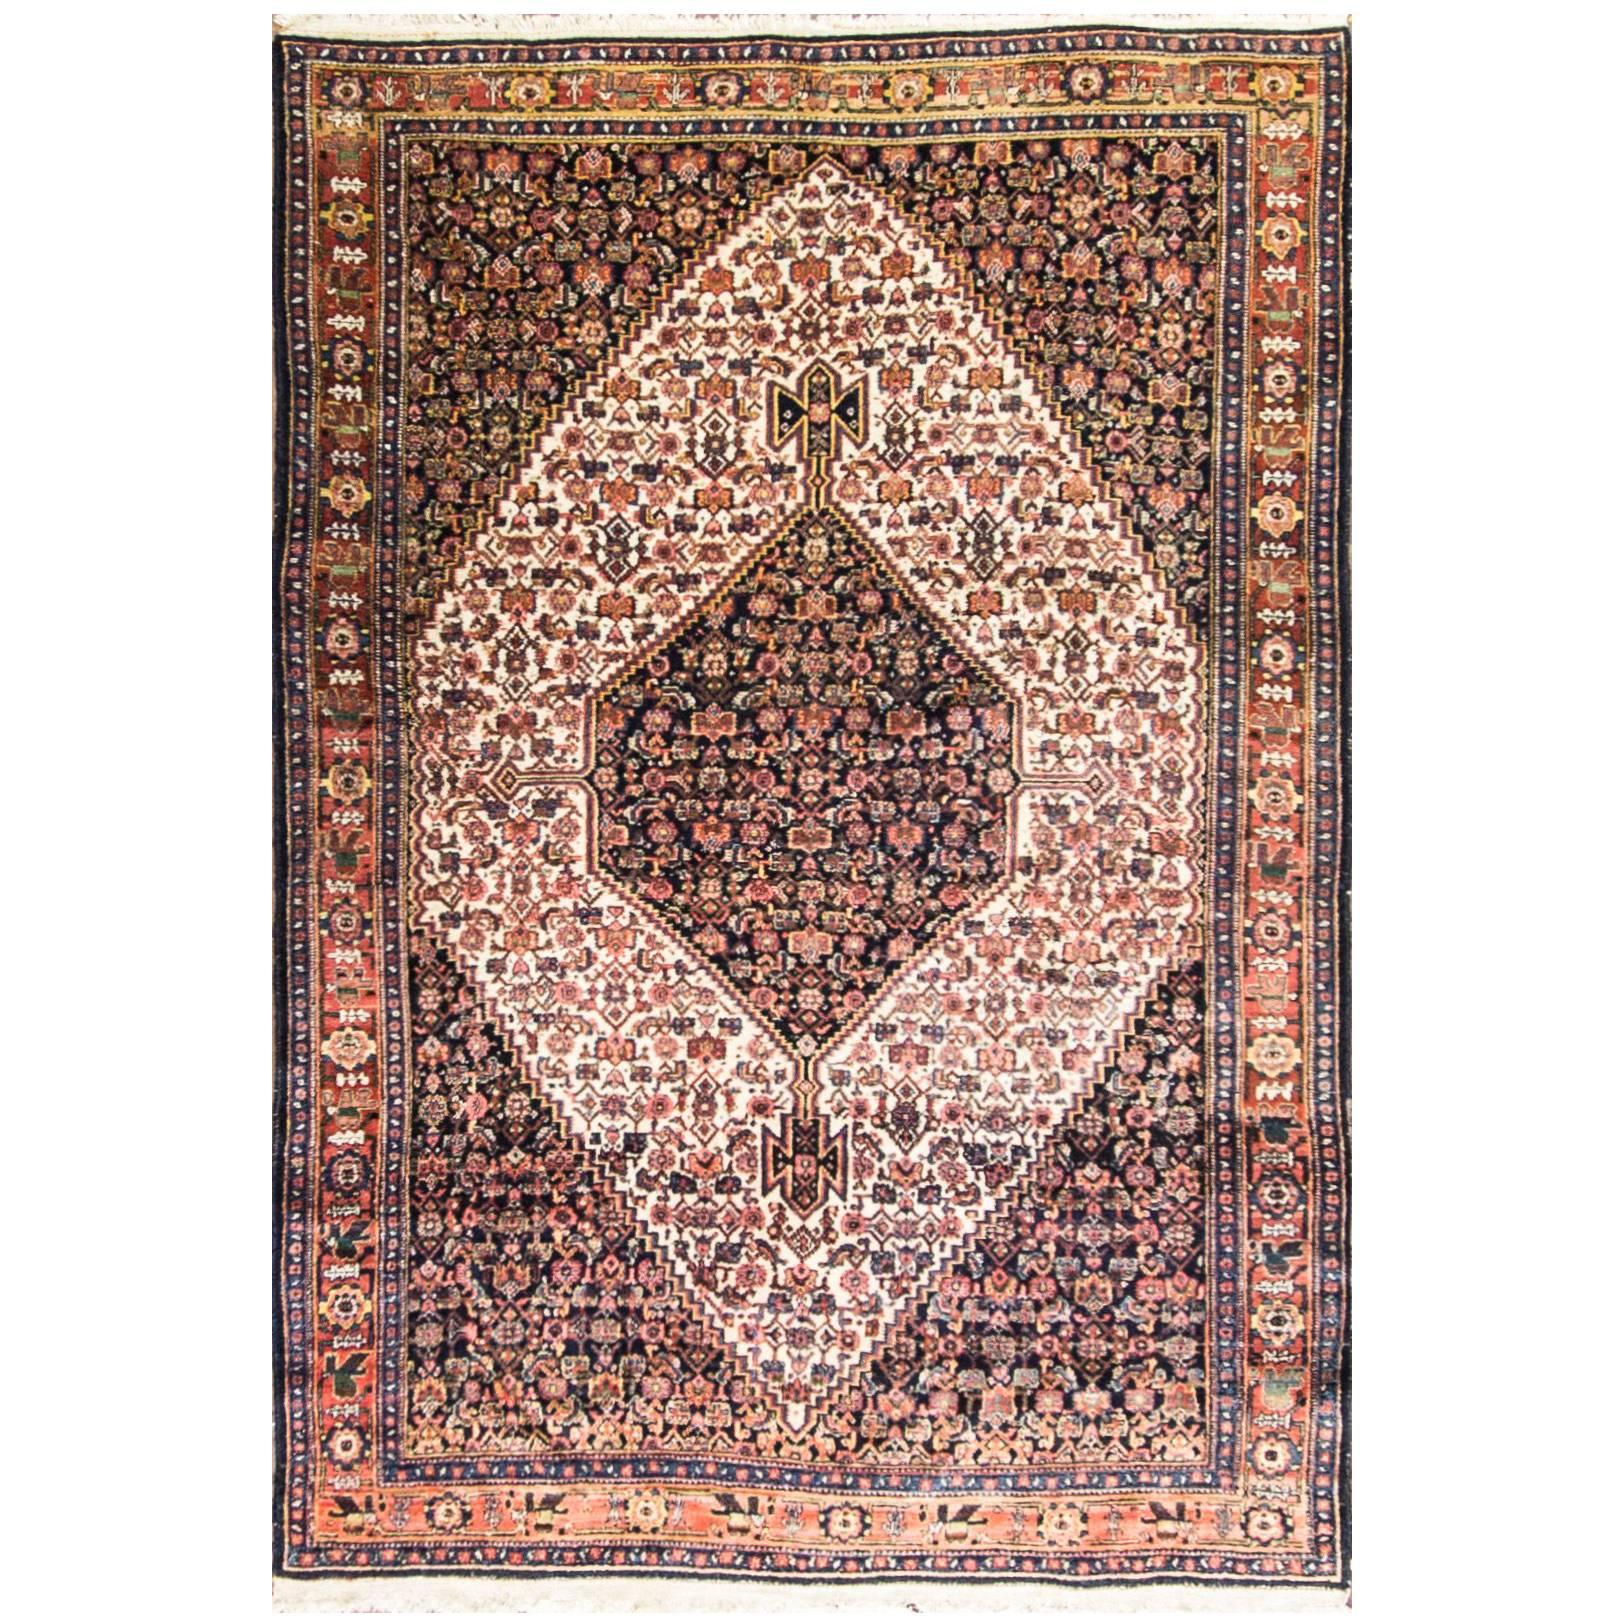 Tapis persan antique Senneh, 101,6 cm x 243,84 cm.  